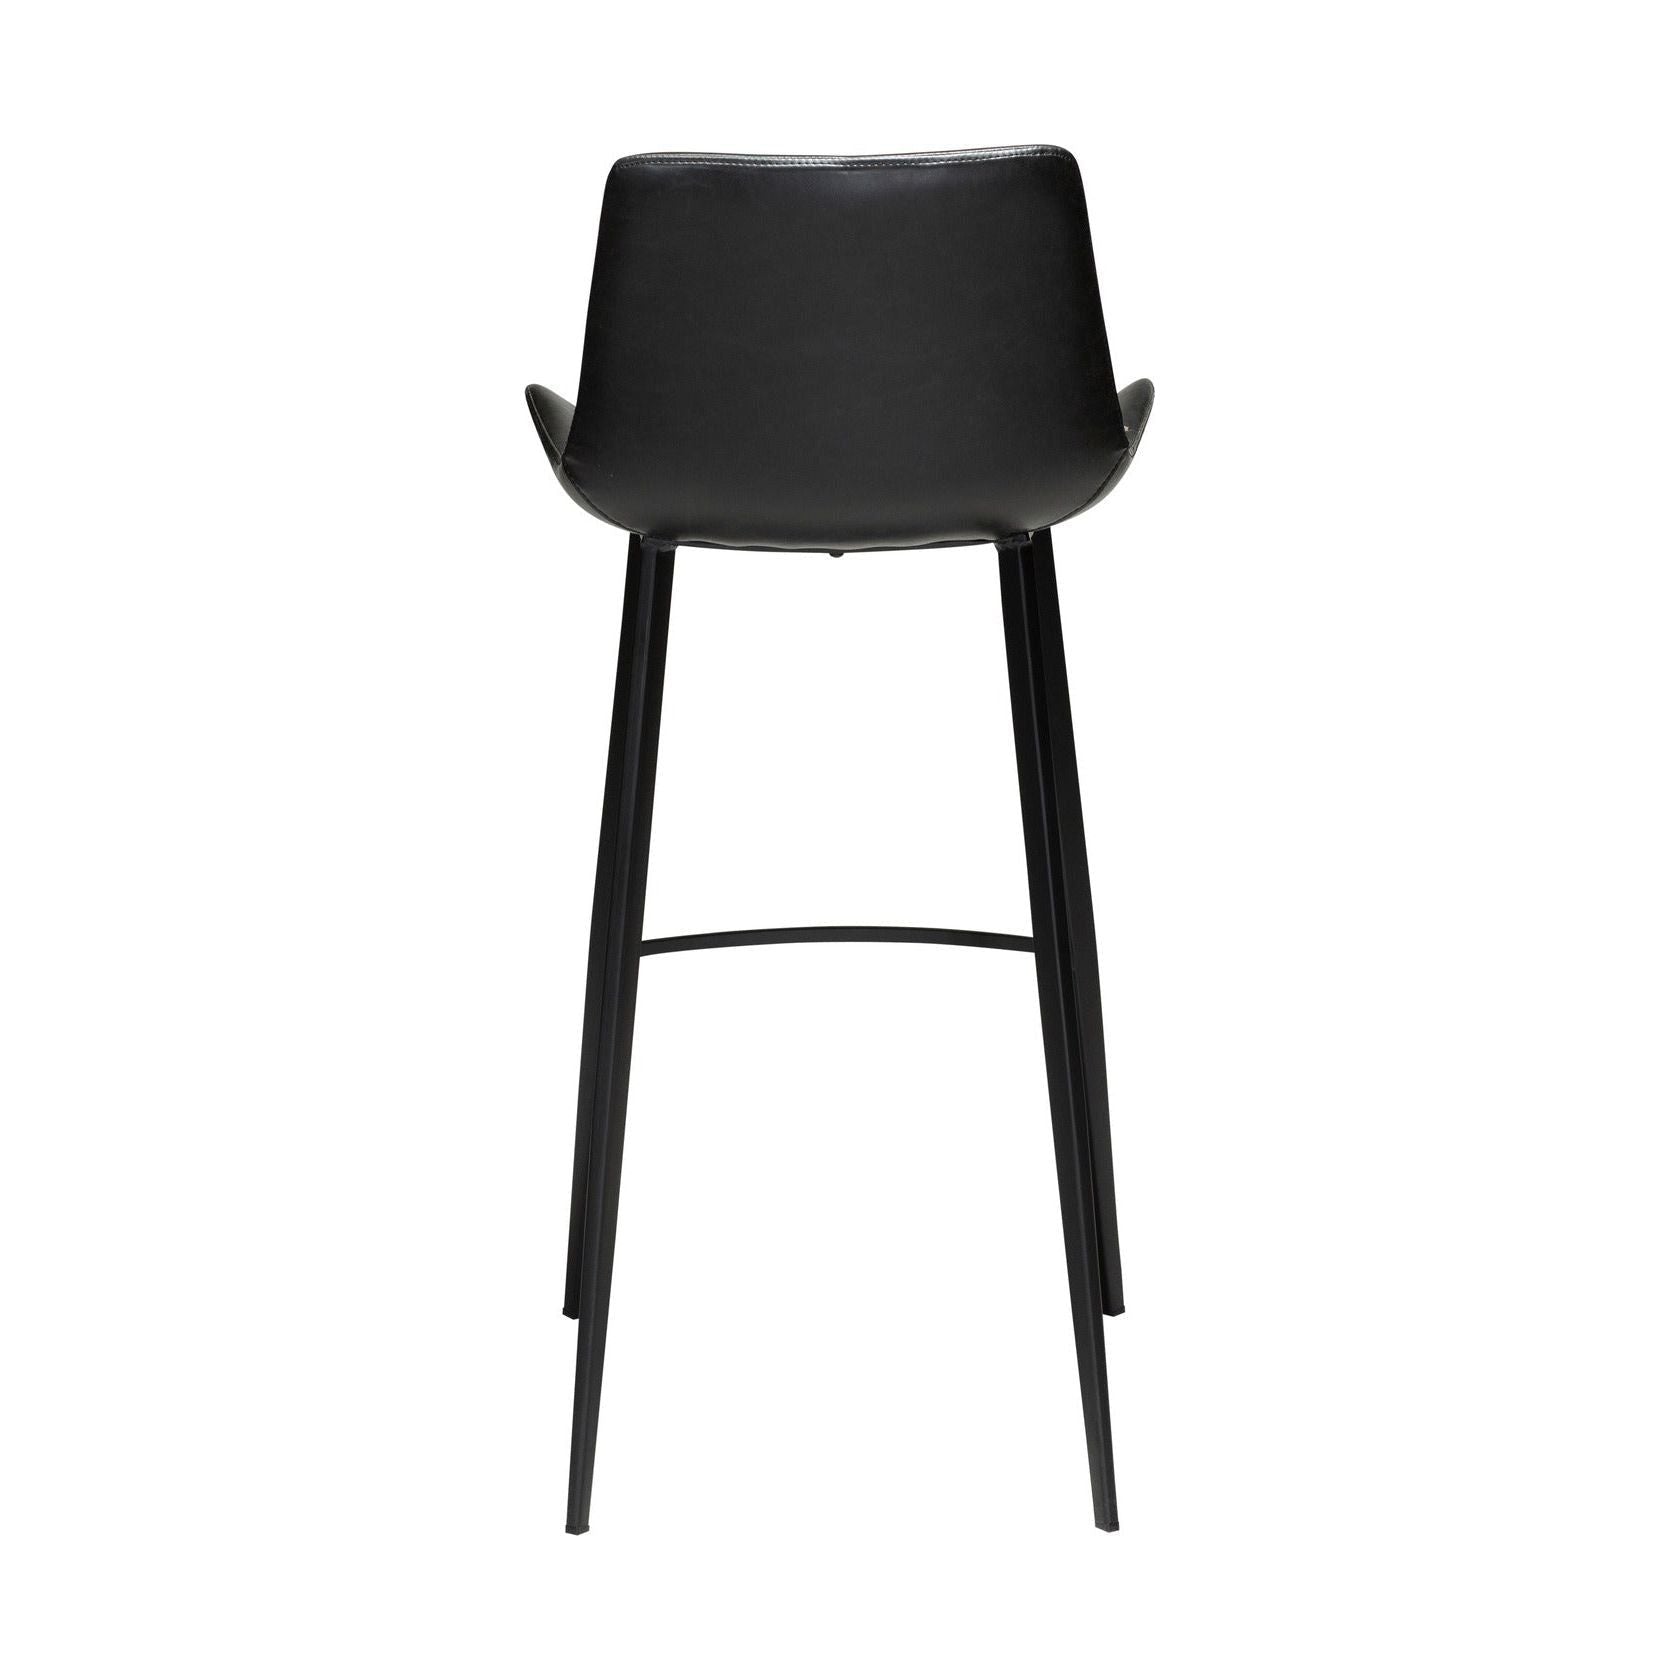 HYPE baro kėdė, juoda spalva